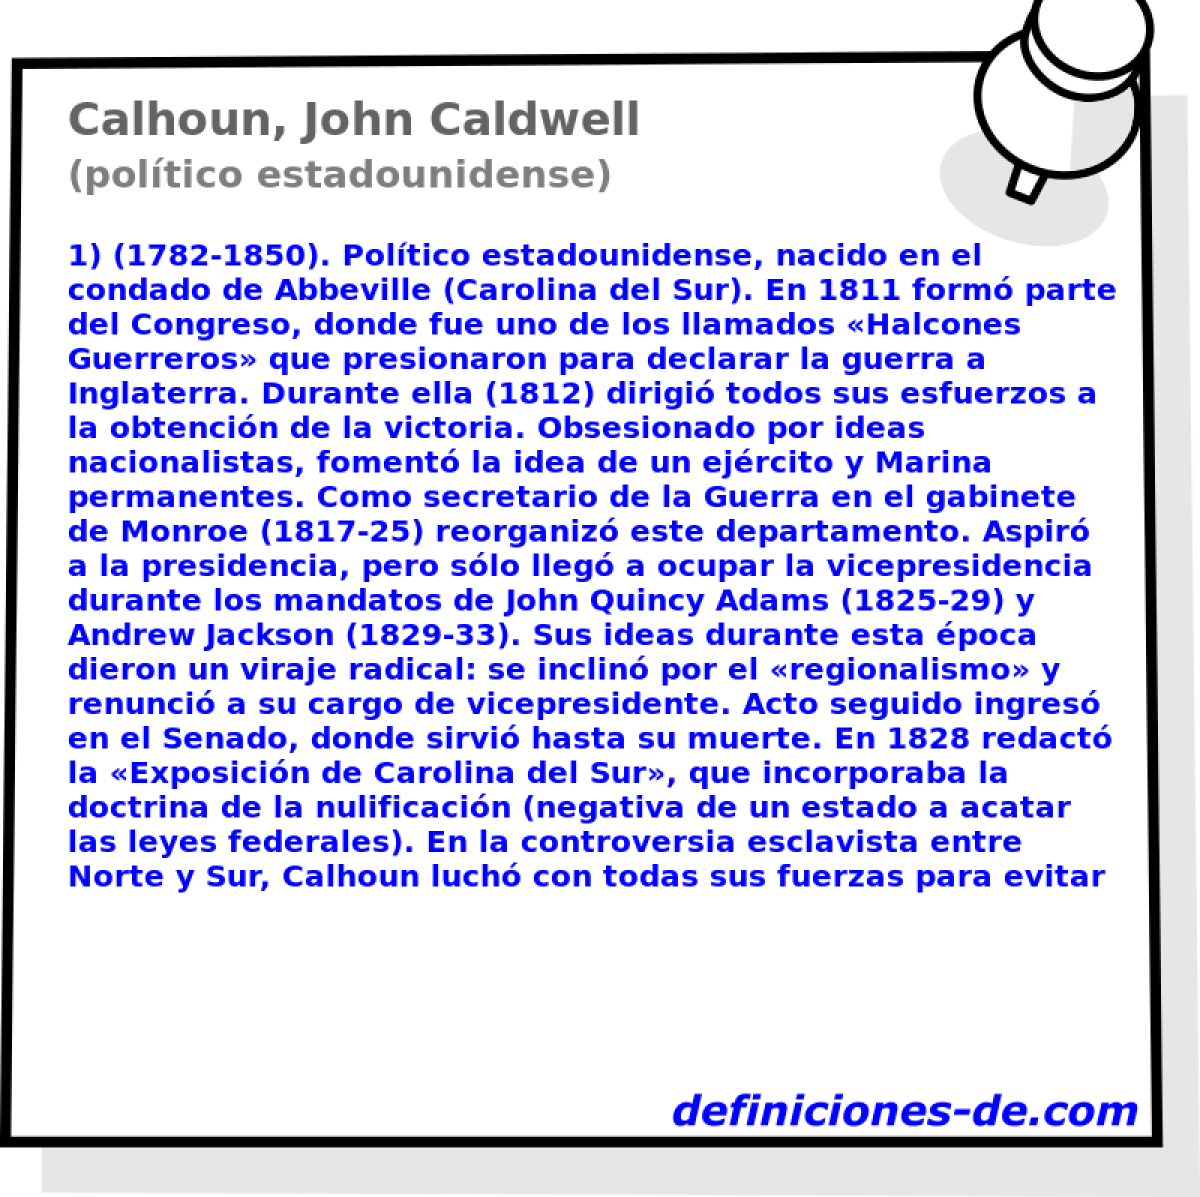 Calhoun, John Caldwell (poltico estadounidense)